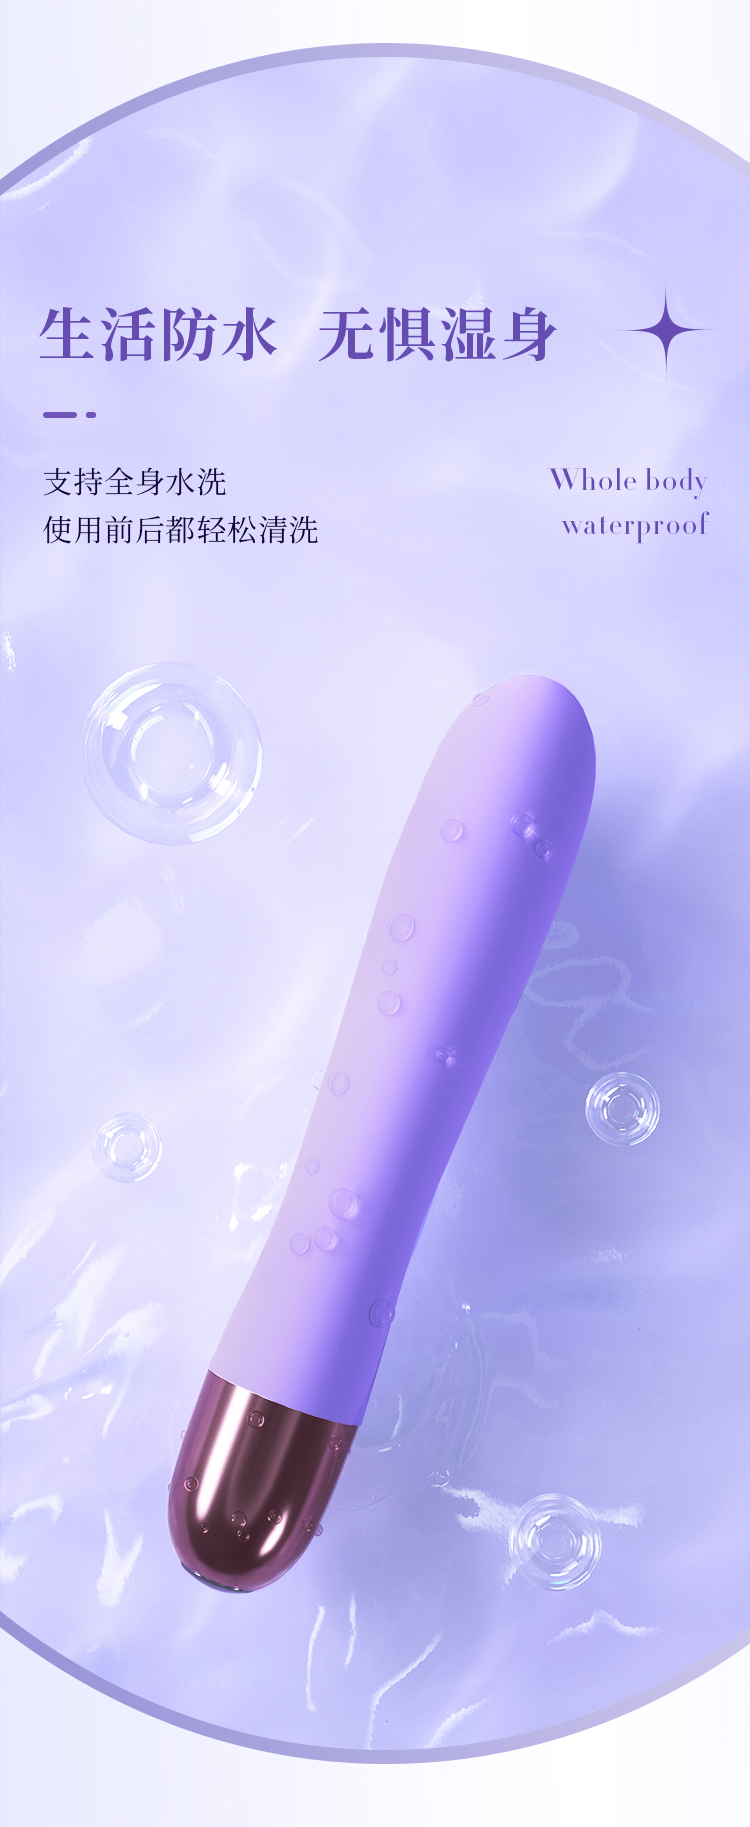 趣爱阁-情趣用品批发进货:欧亚思WOWYES KIKI-1代震动棒(紫)